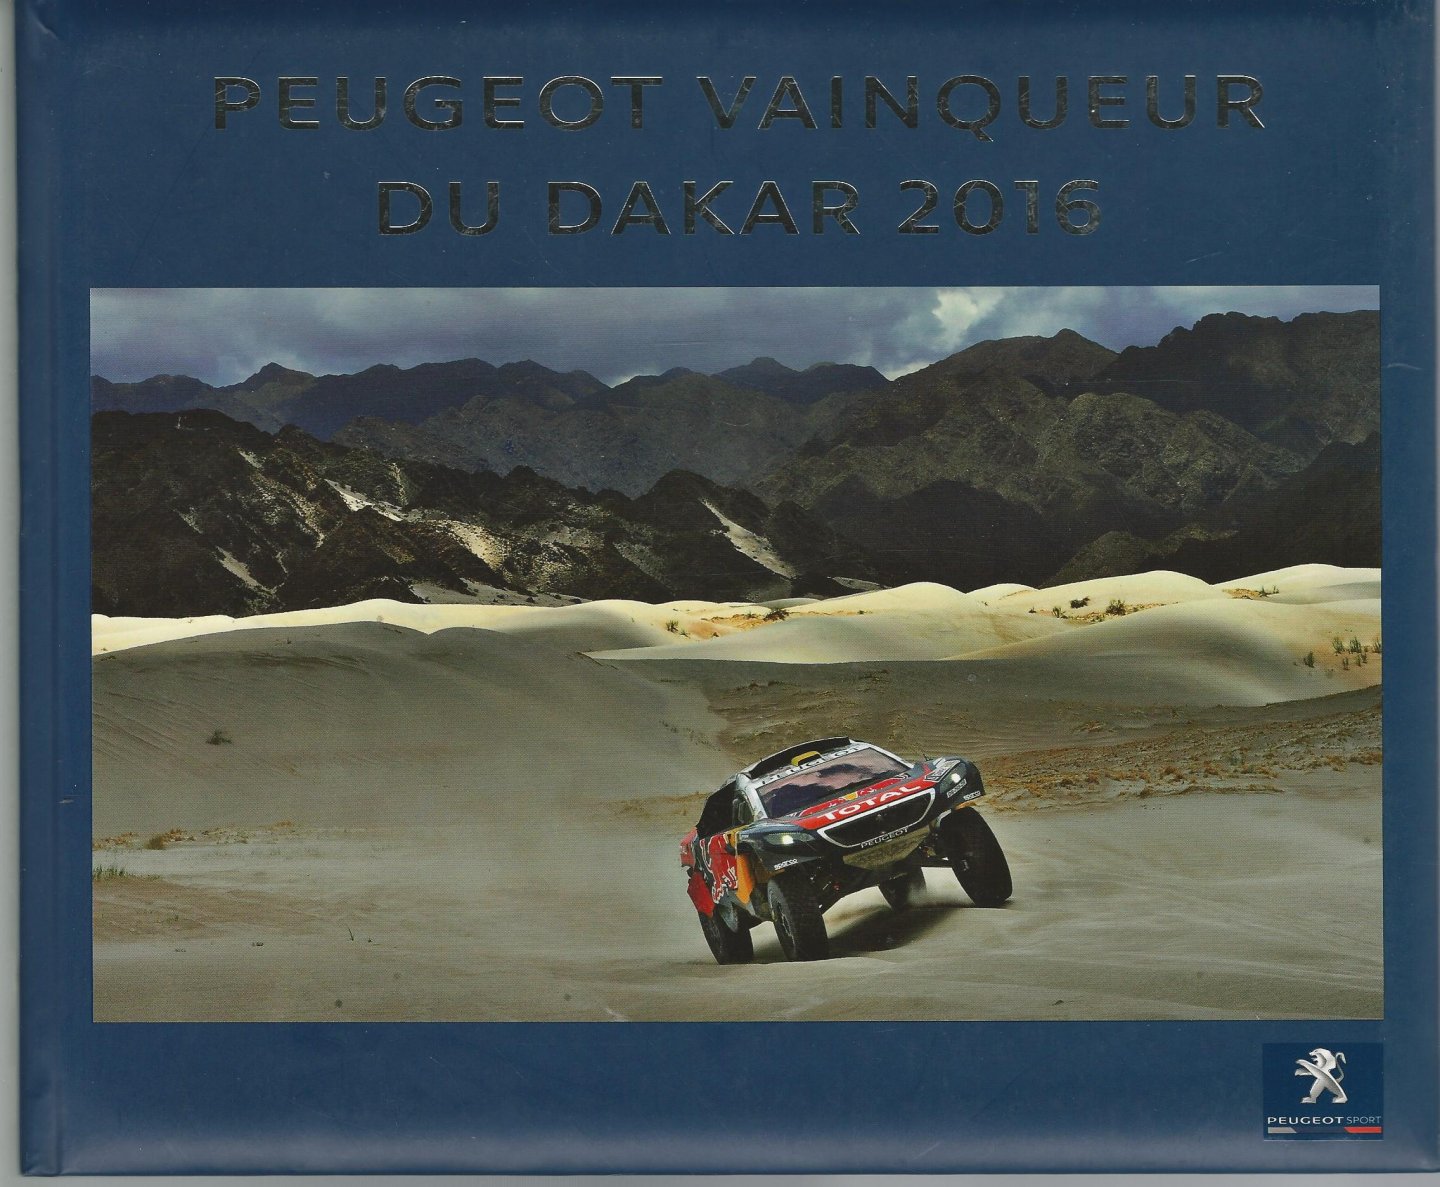  - Peugeot Vainqueur du Dakar 2016